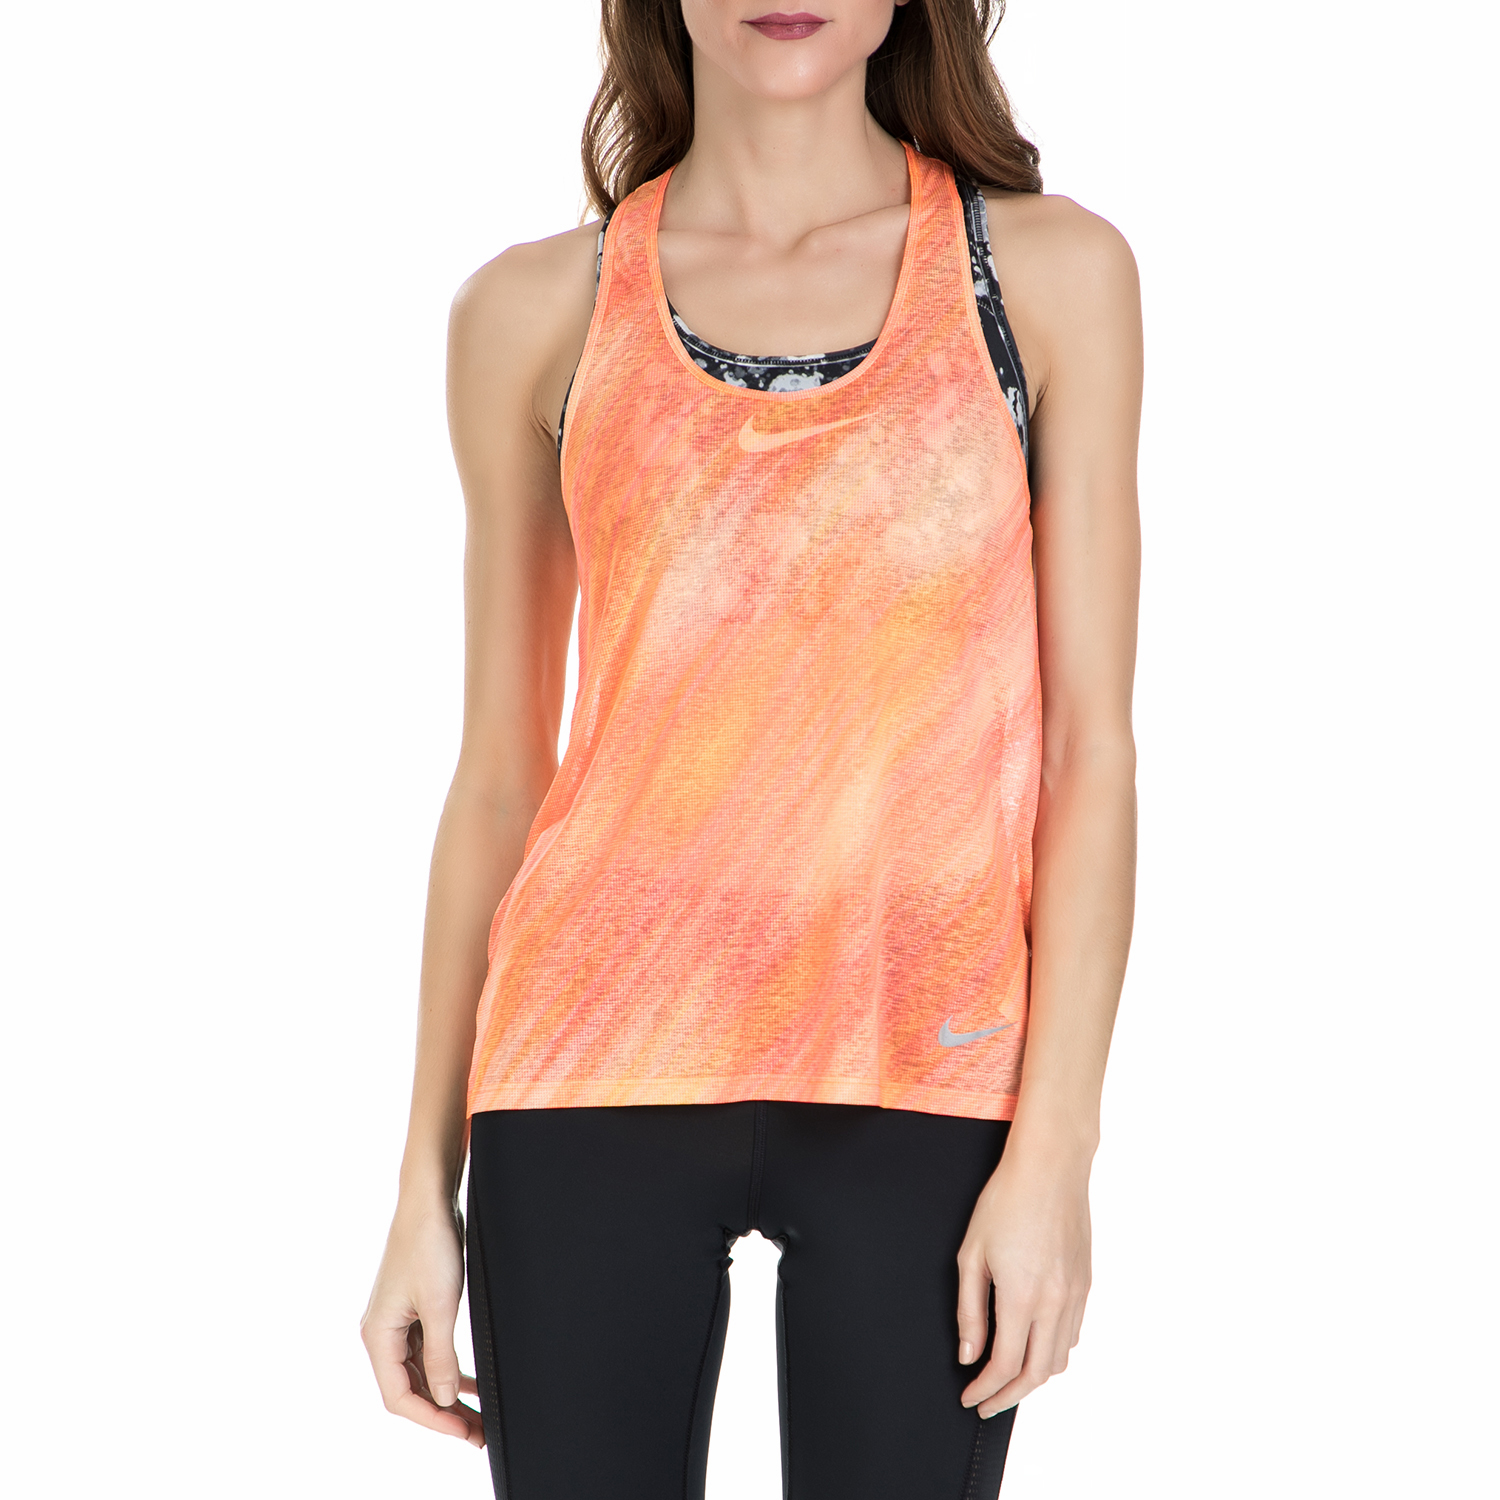 Γυναικεία/Ρούχα/Αθλητικά/T-shirt-Τοπ NIKE - Γυναικείο αθλητικό φανελάκι Nike BRTHE πορτοκαλί